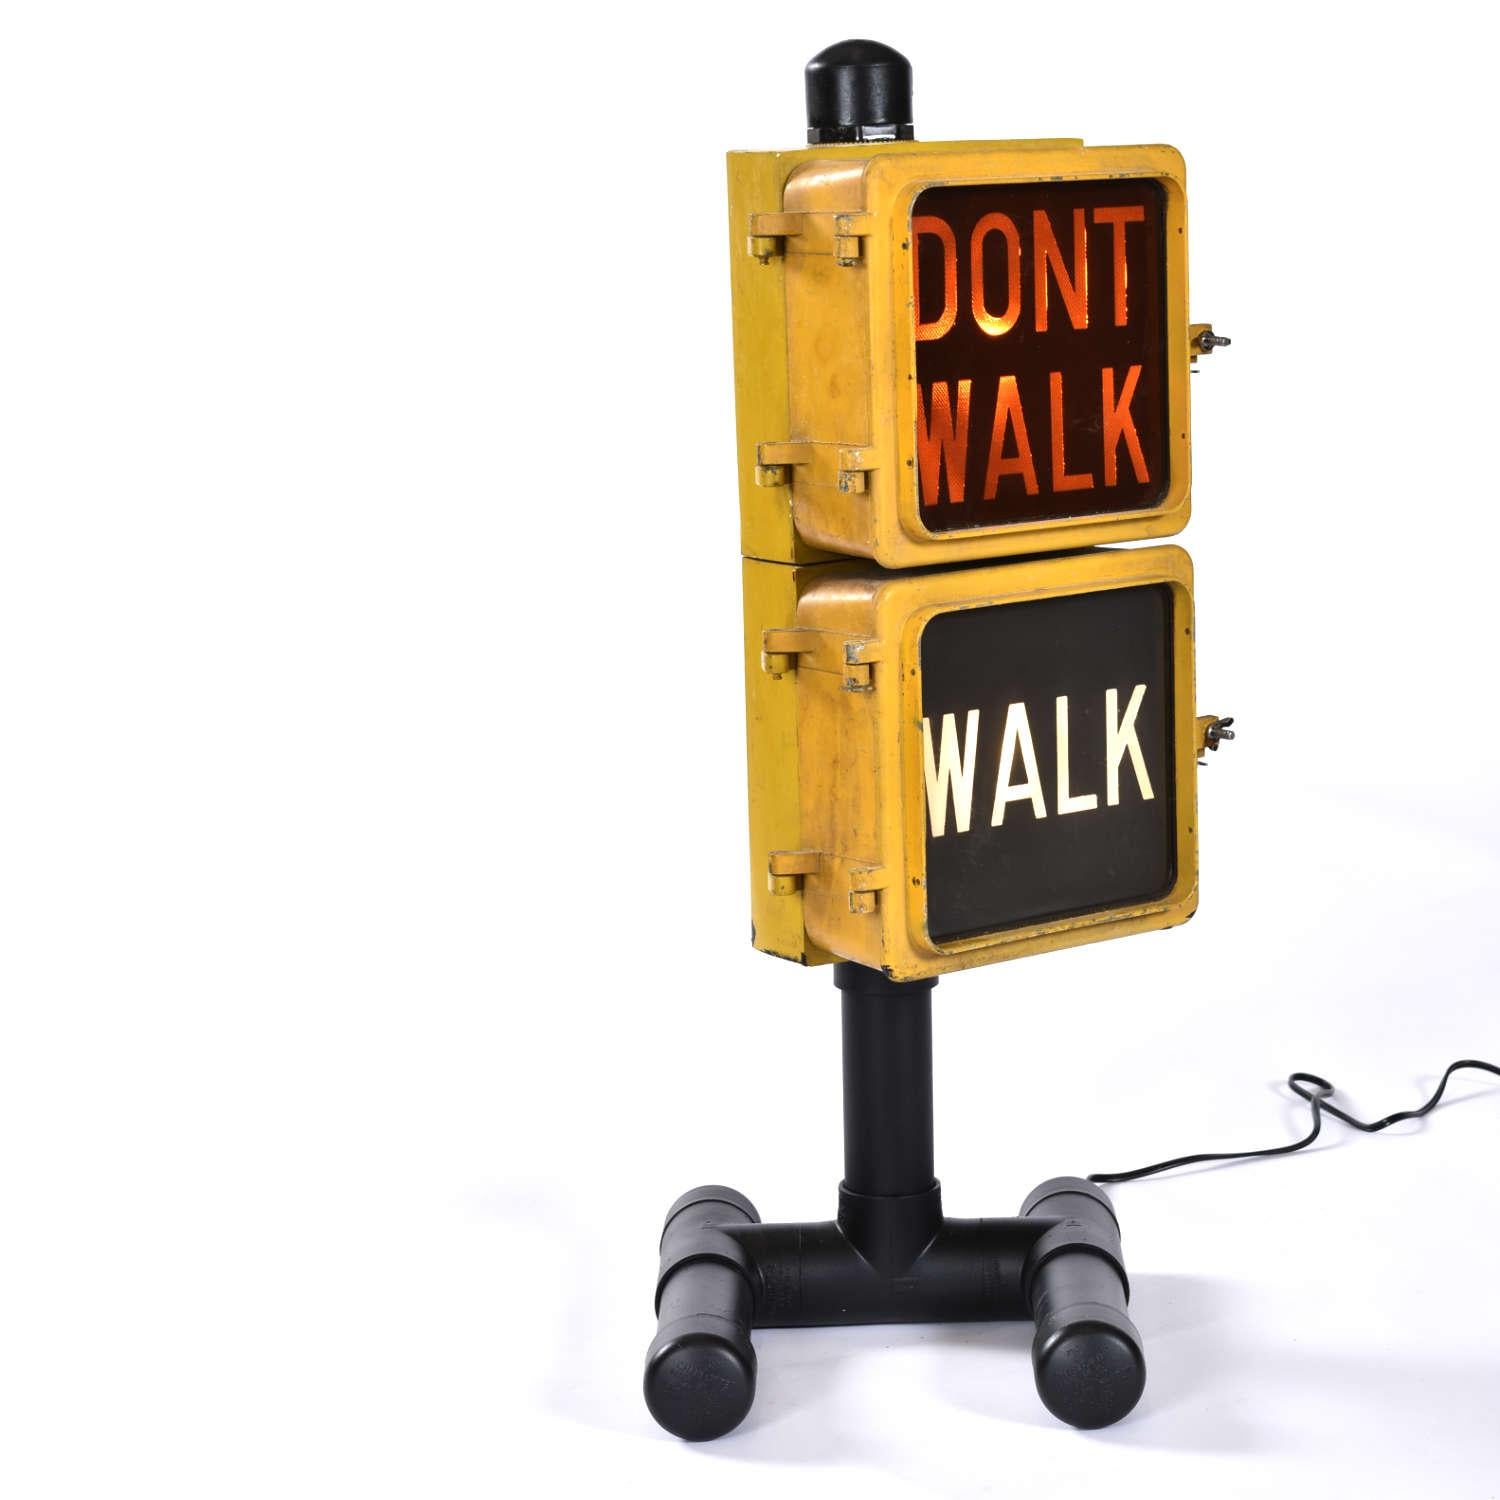 walk don't walk signal